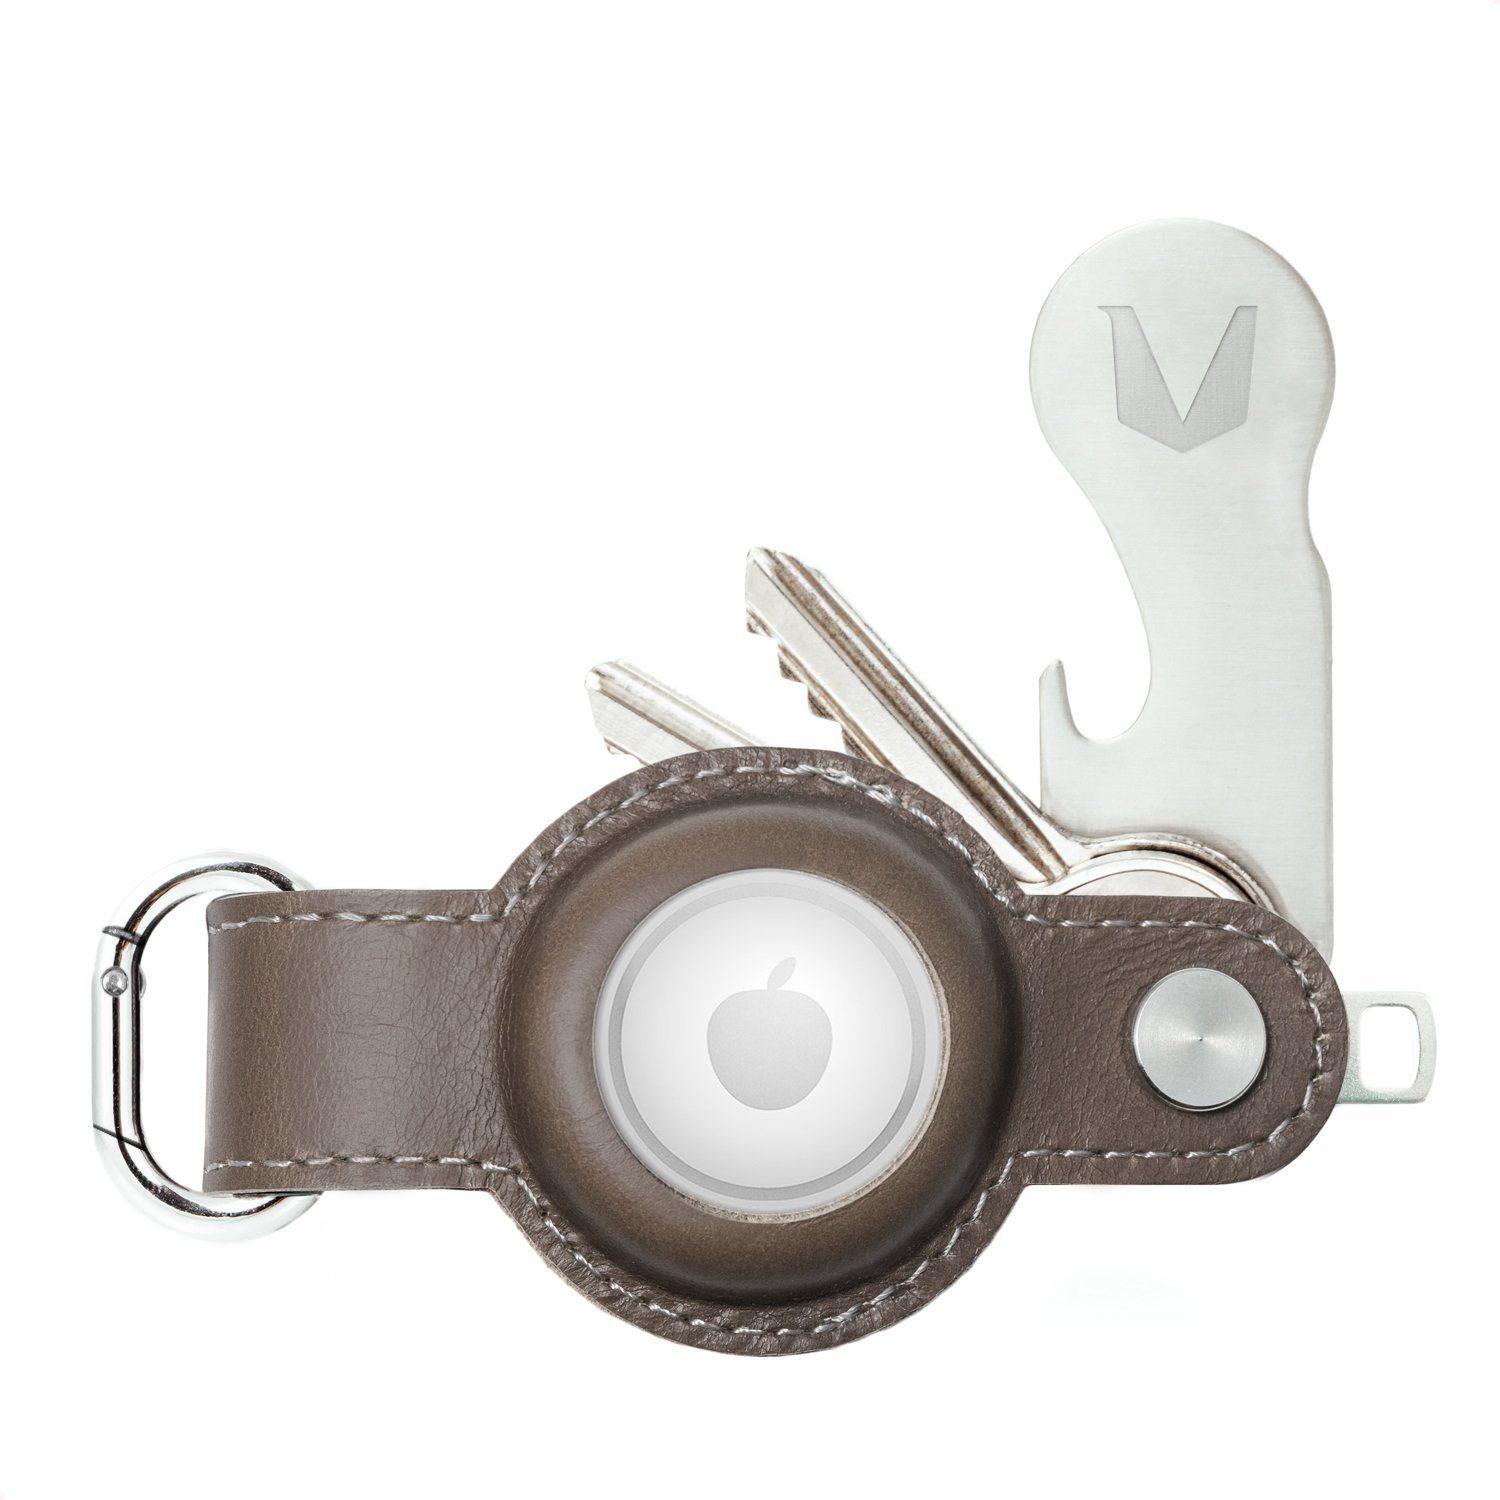 MAGATI Schlüsseltasche Airgonizer Schlüsseletui aus Echtleder für 1-7 Schlüssel (kompatibel mit Apple Airtag Tracker), inkl. Schlüsselfundservice & Einkaufswagenlöser Mokka